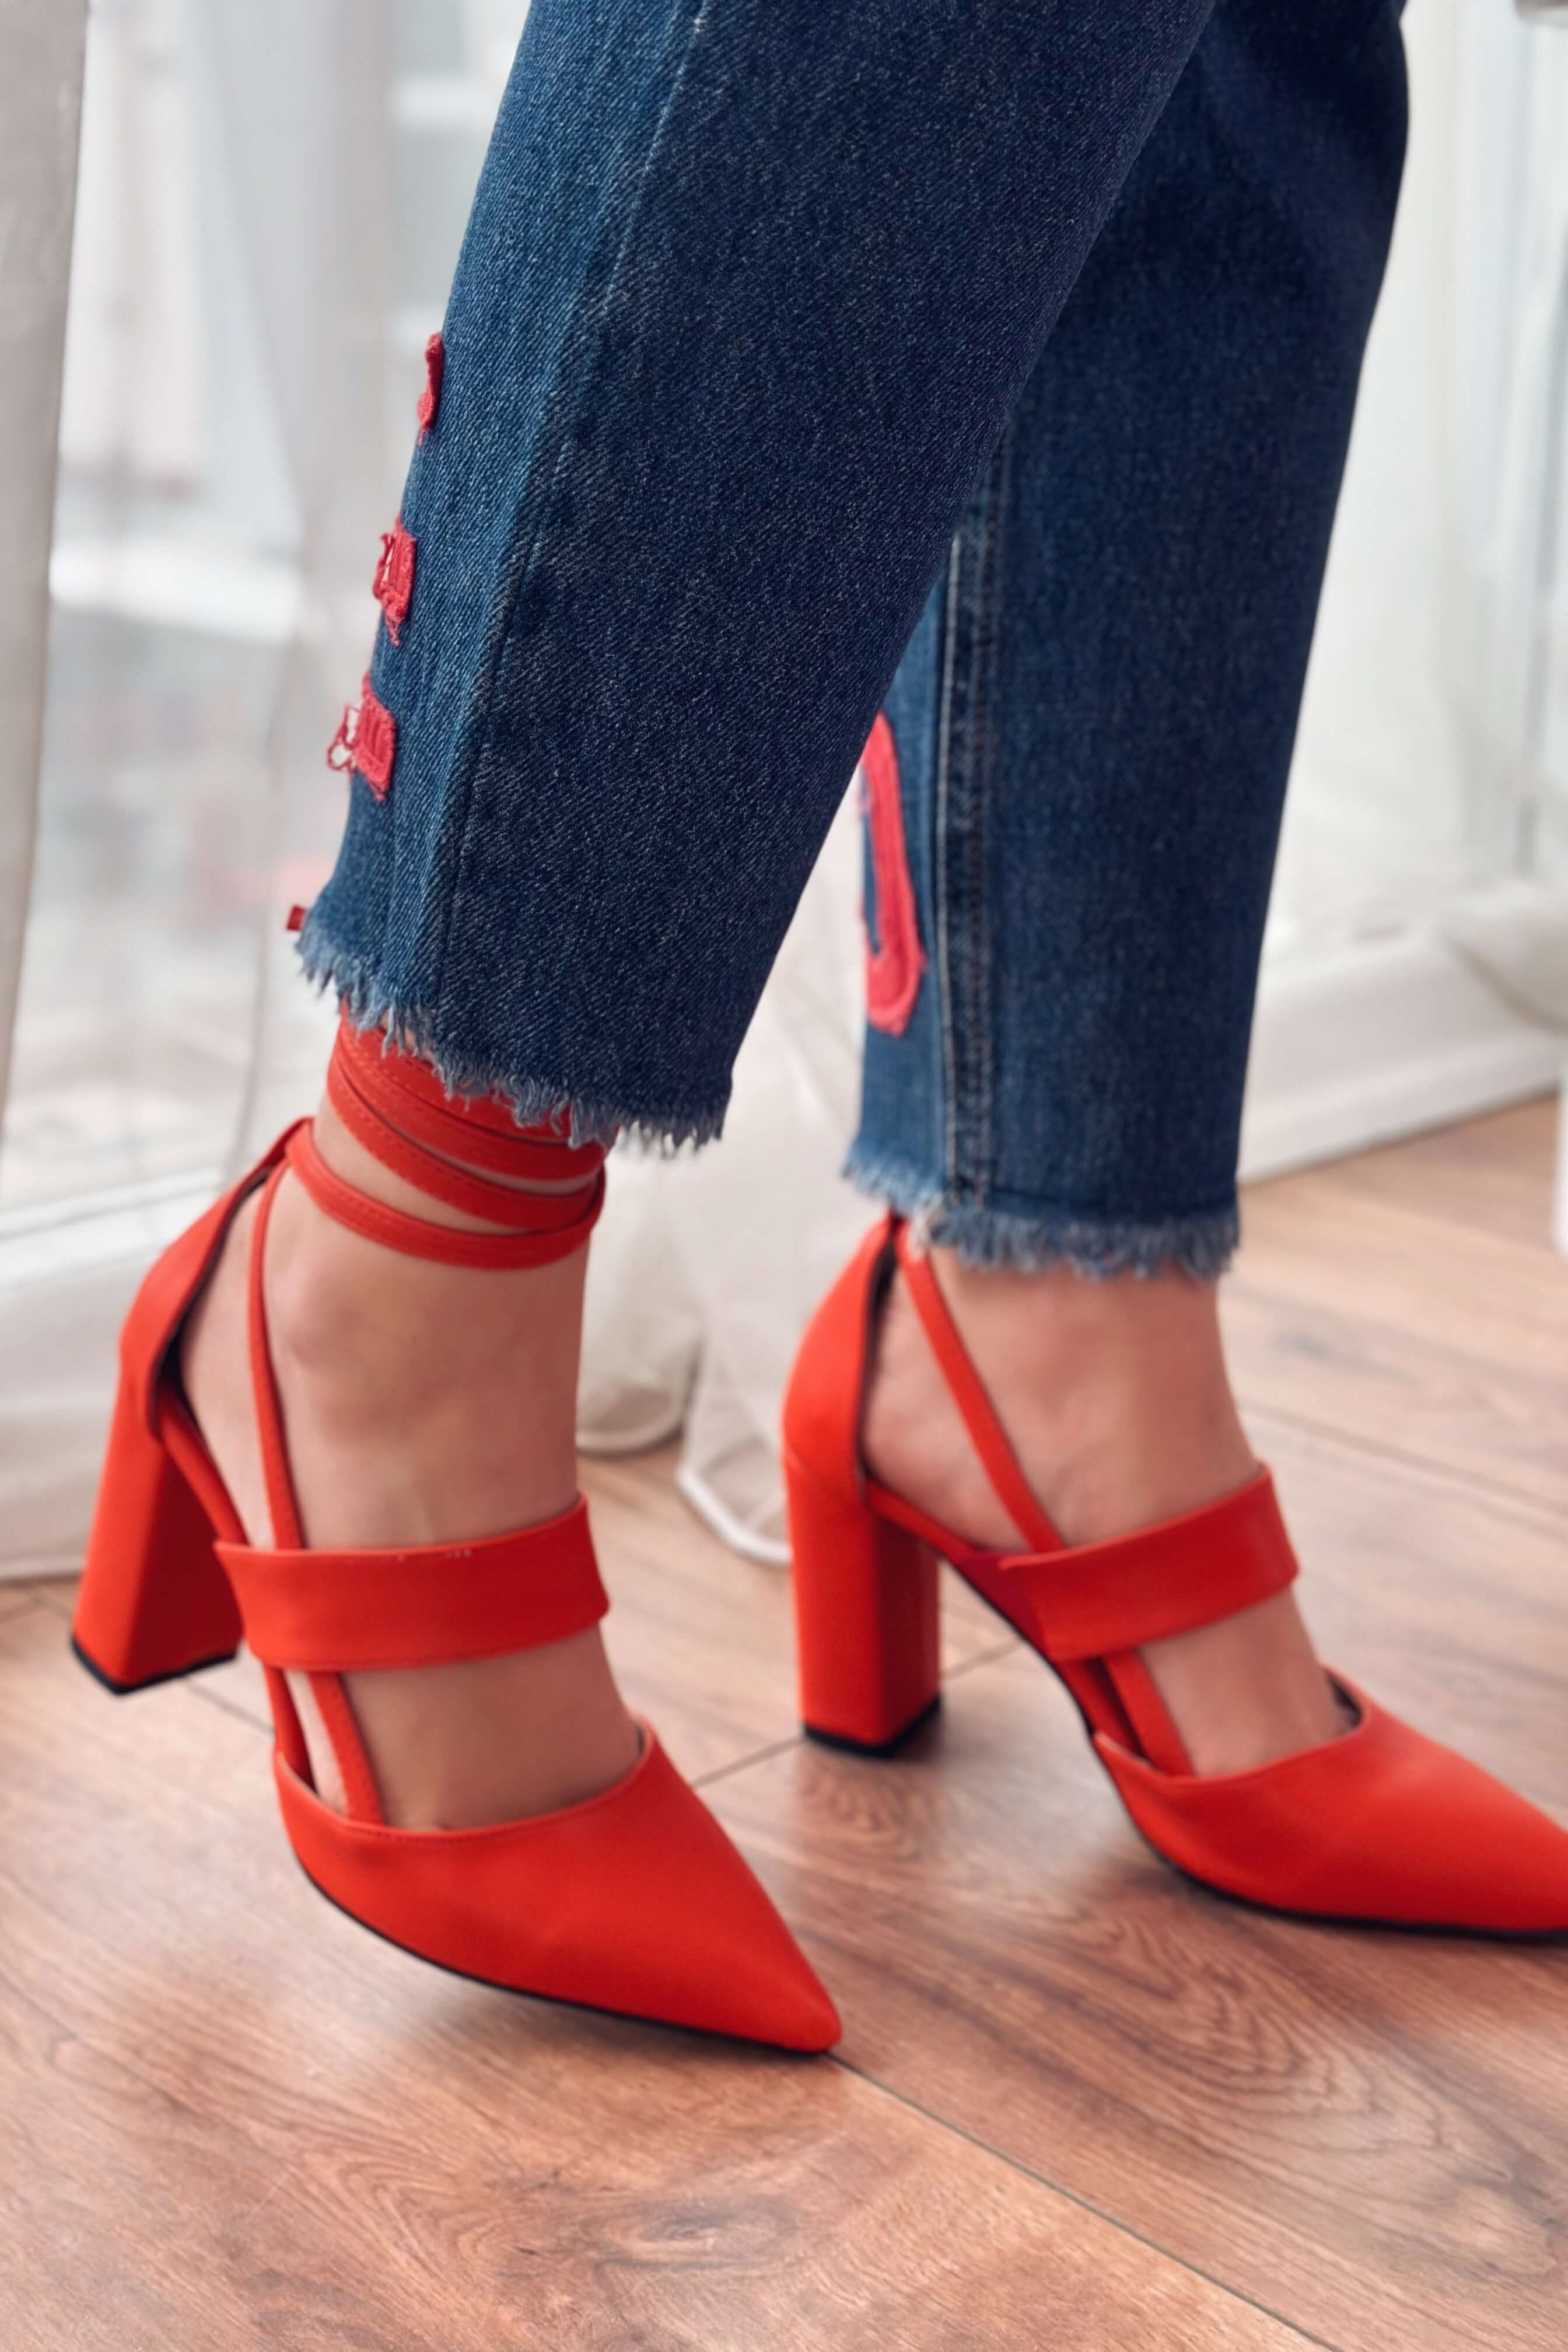 Lucia Mat Deri Yüksek Topuklu Kadın Stiletto Kırmızı